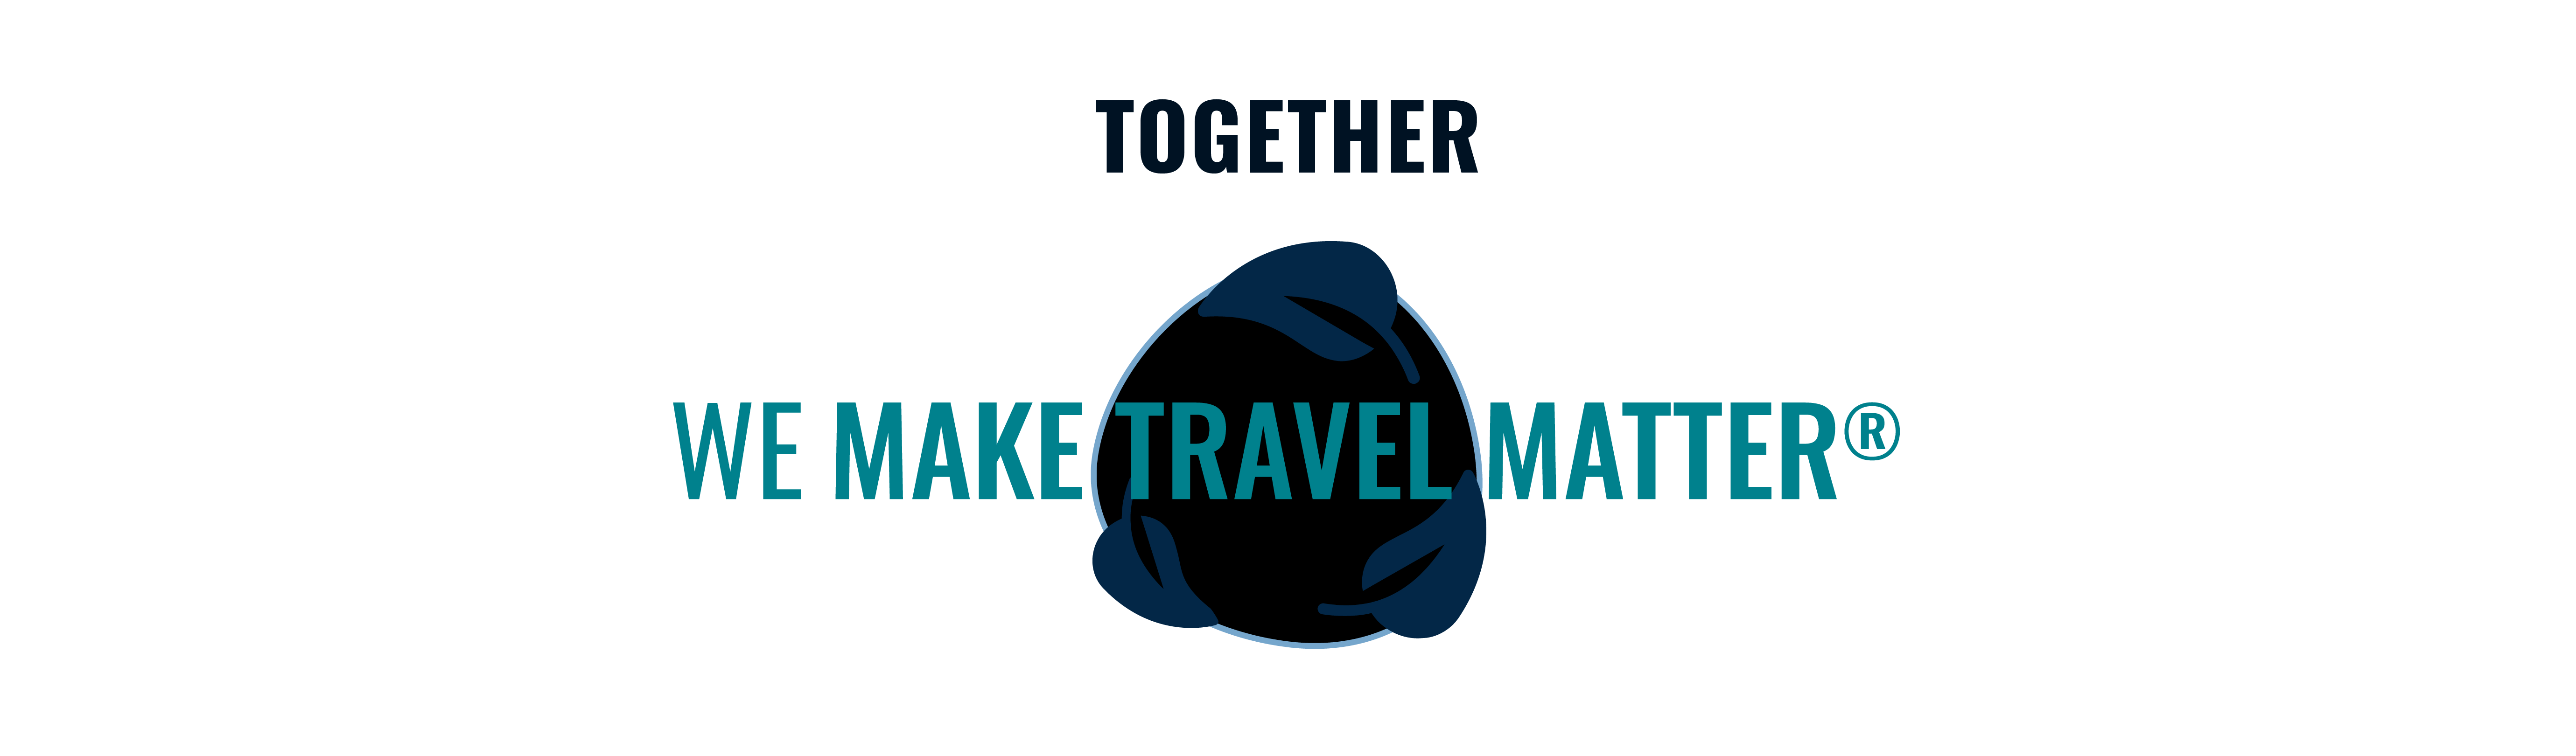 Together we make travel matter